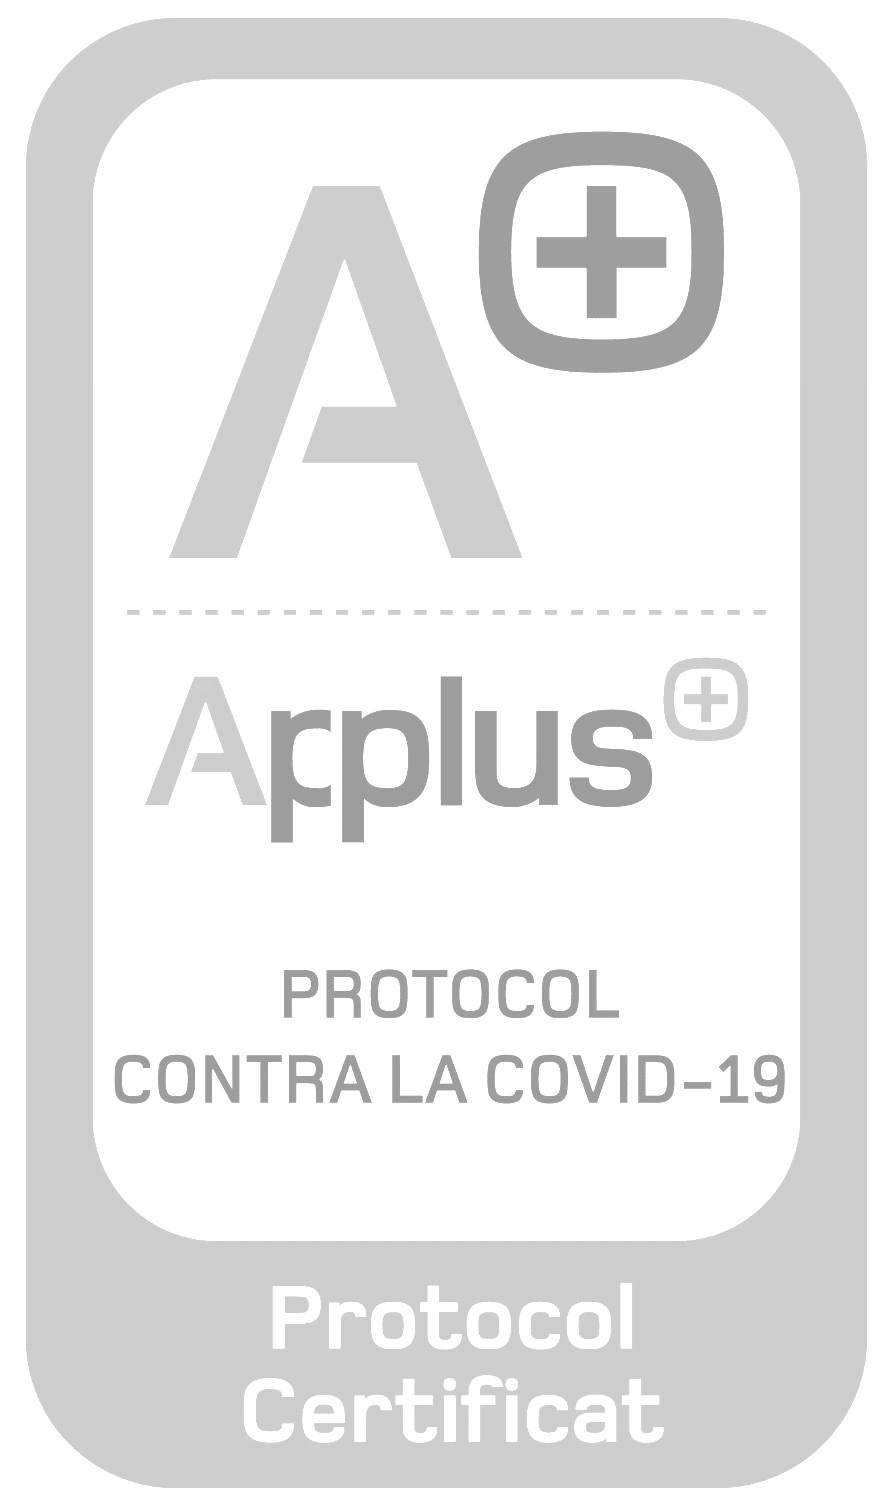 Applus Covid-19